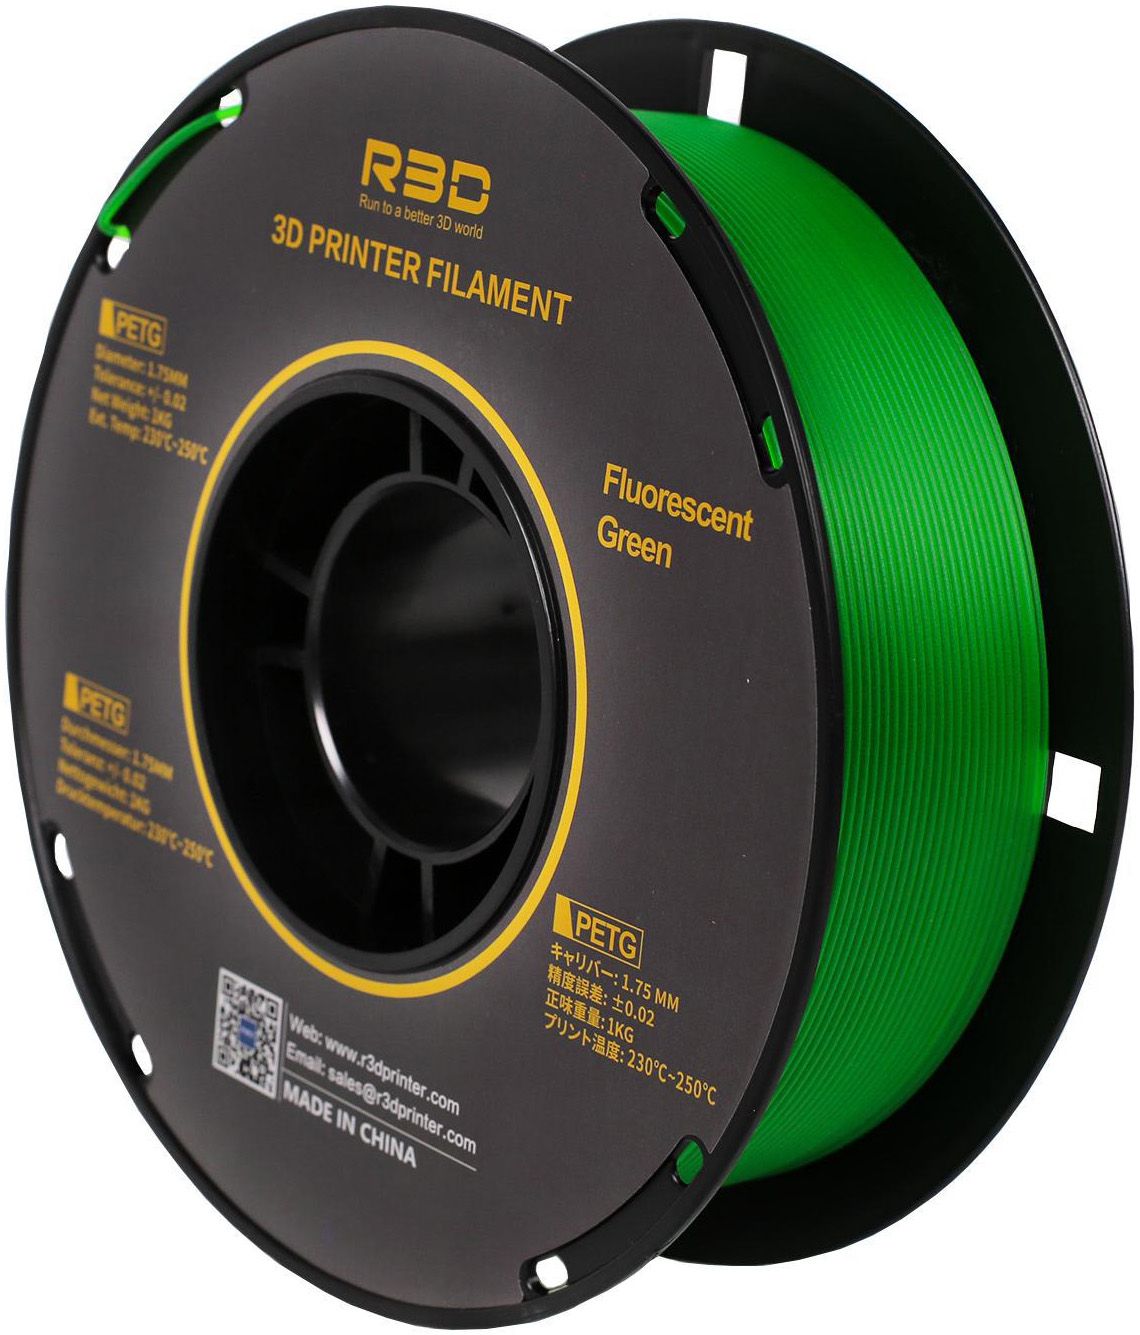 PETG пластик R3D 1,75 мм флуоресцентный зеленый 1 кг